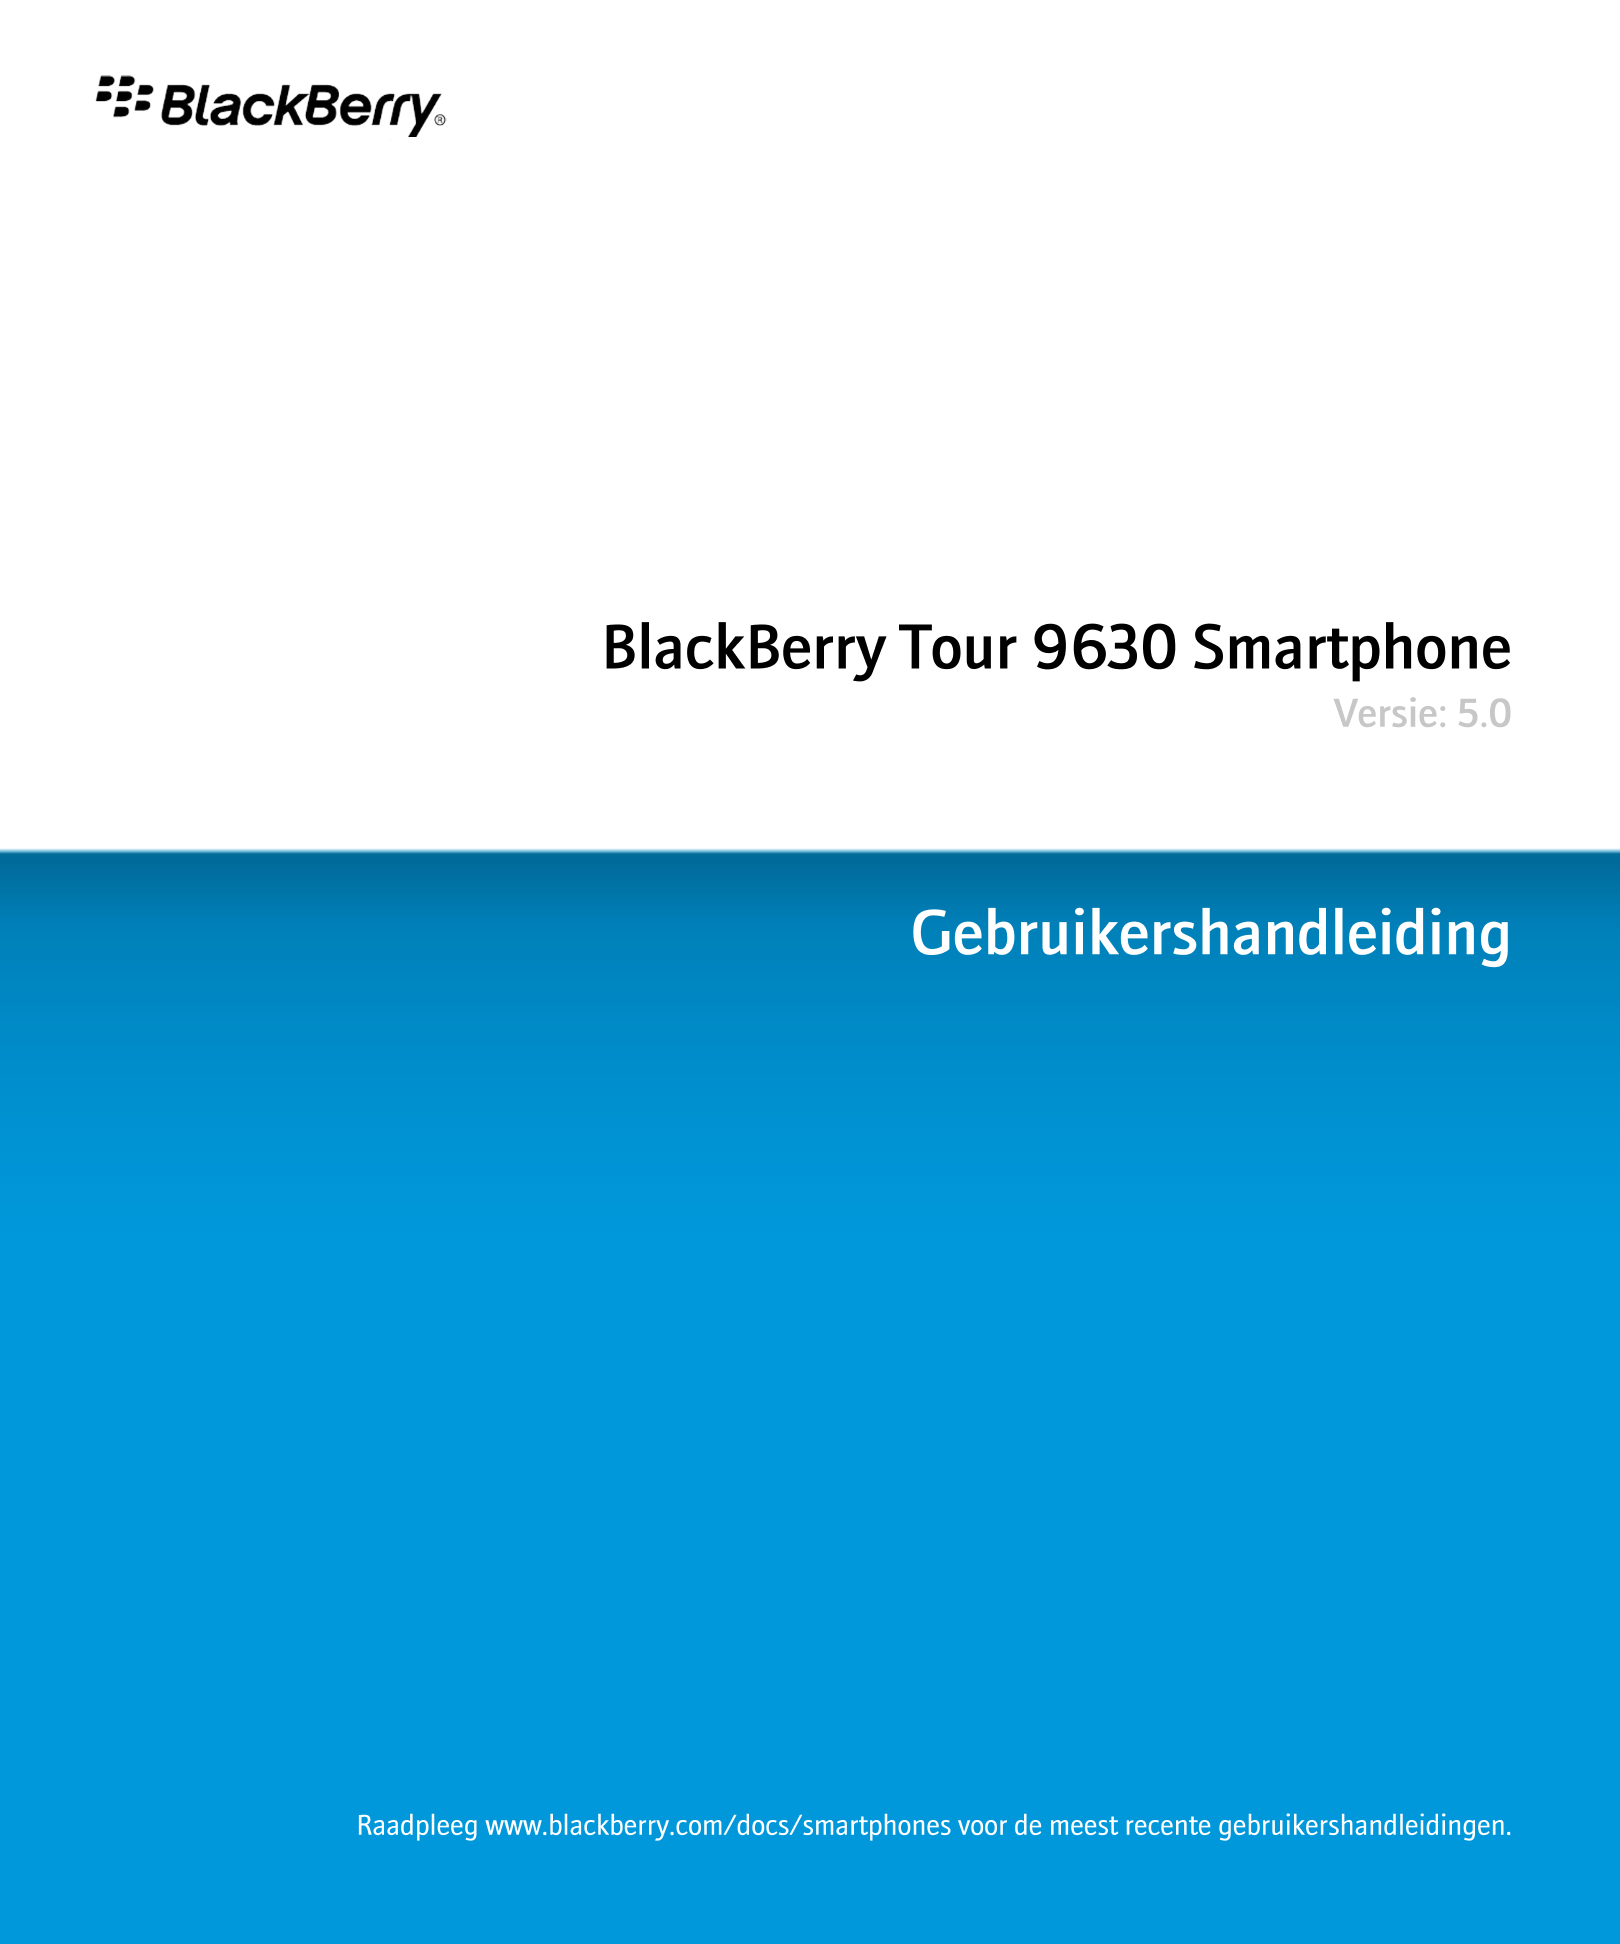 BlackBerry Tour 9630 Smartphone
Versie: 5.0
Gebruikershandleiding
Raadpleeg www.blackberry.com/docs/smartphones voor de meest re